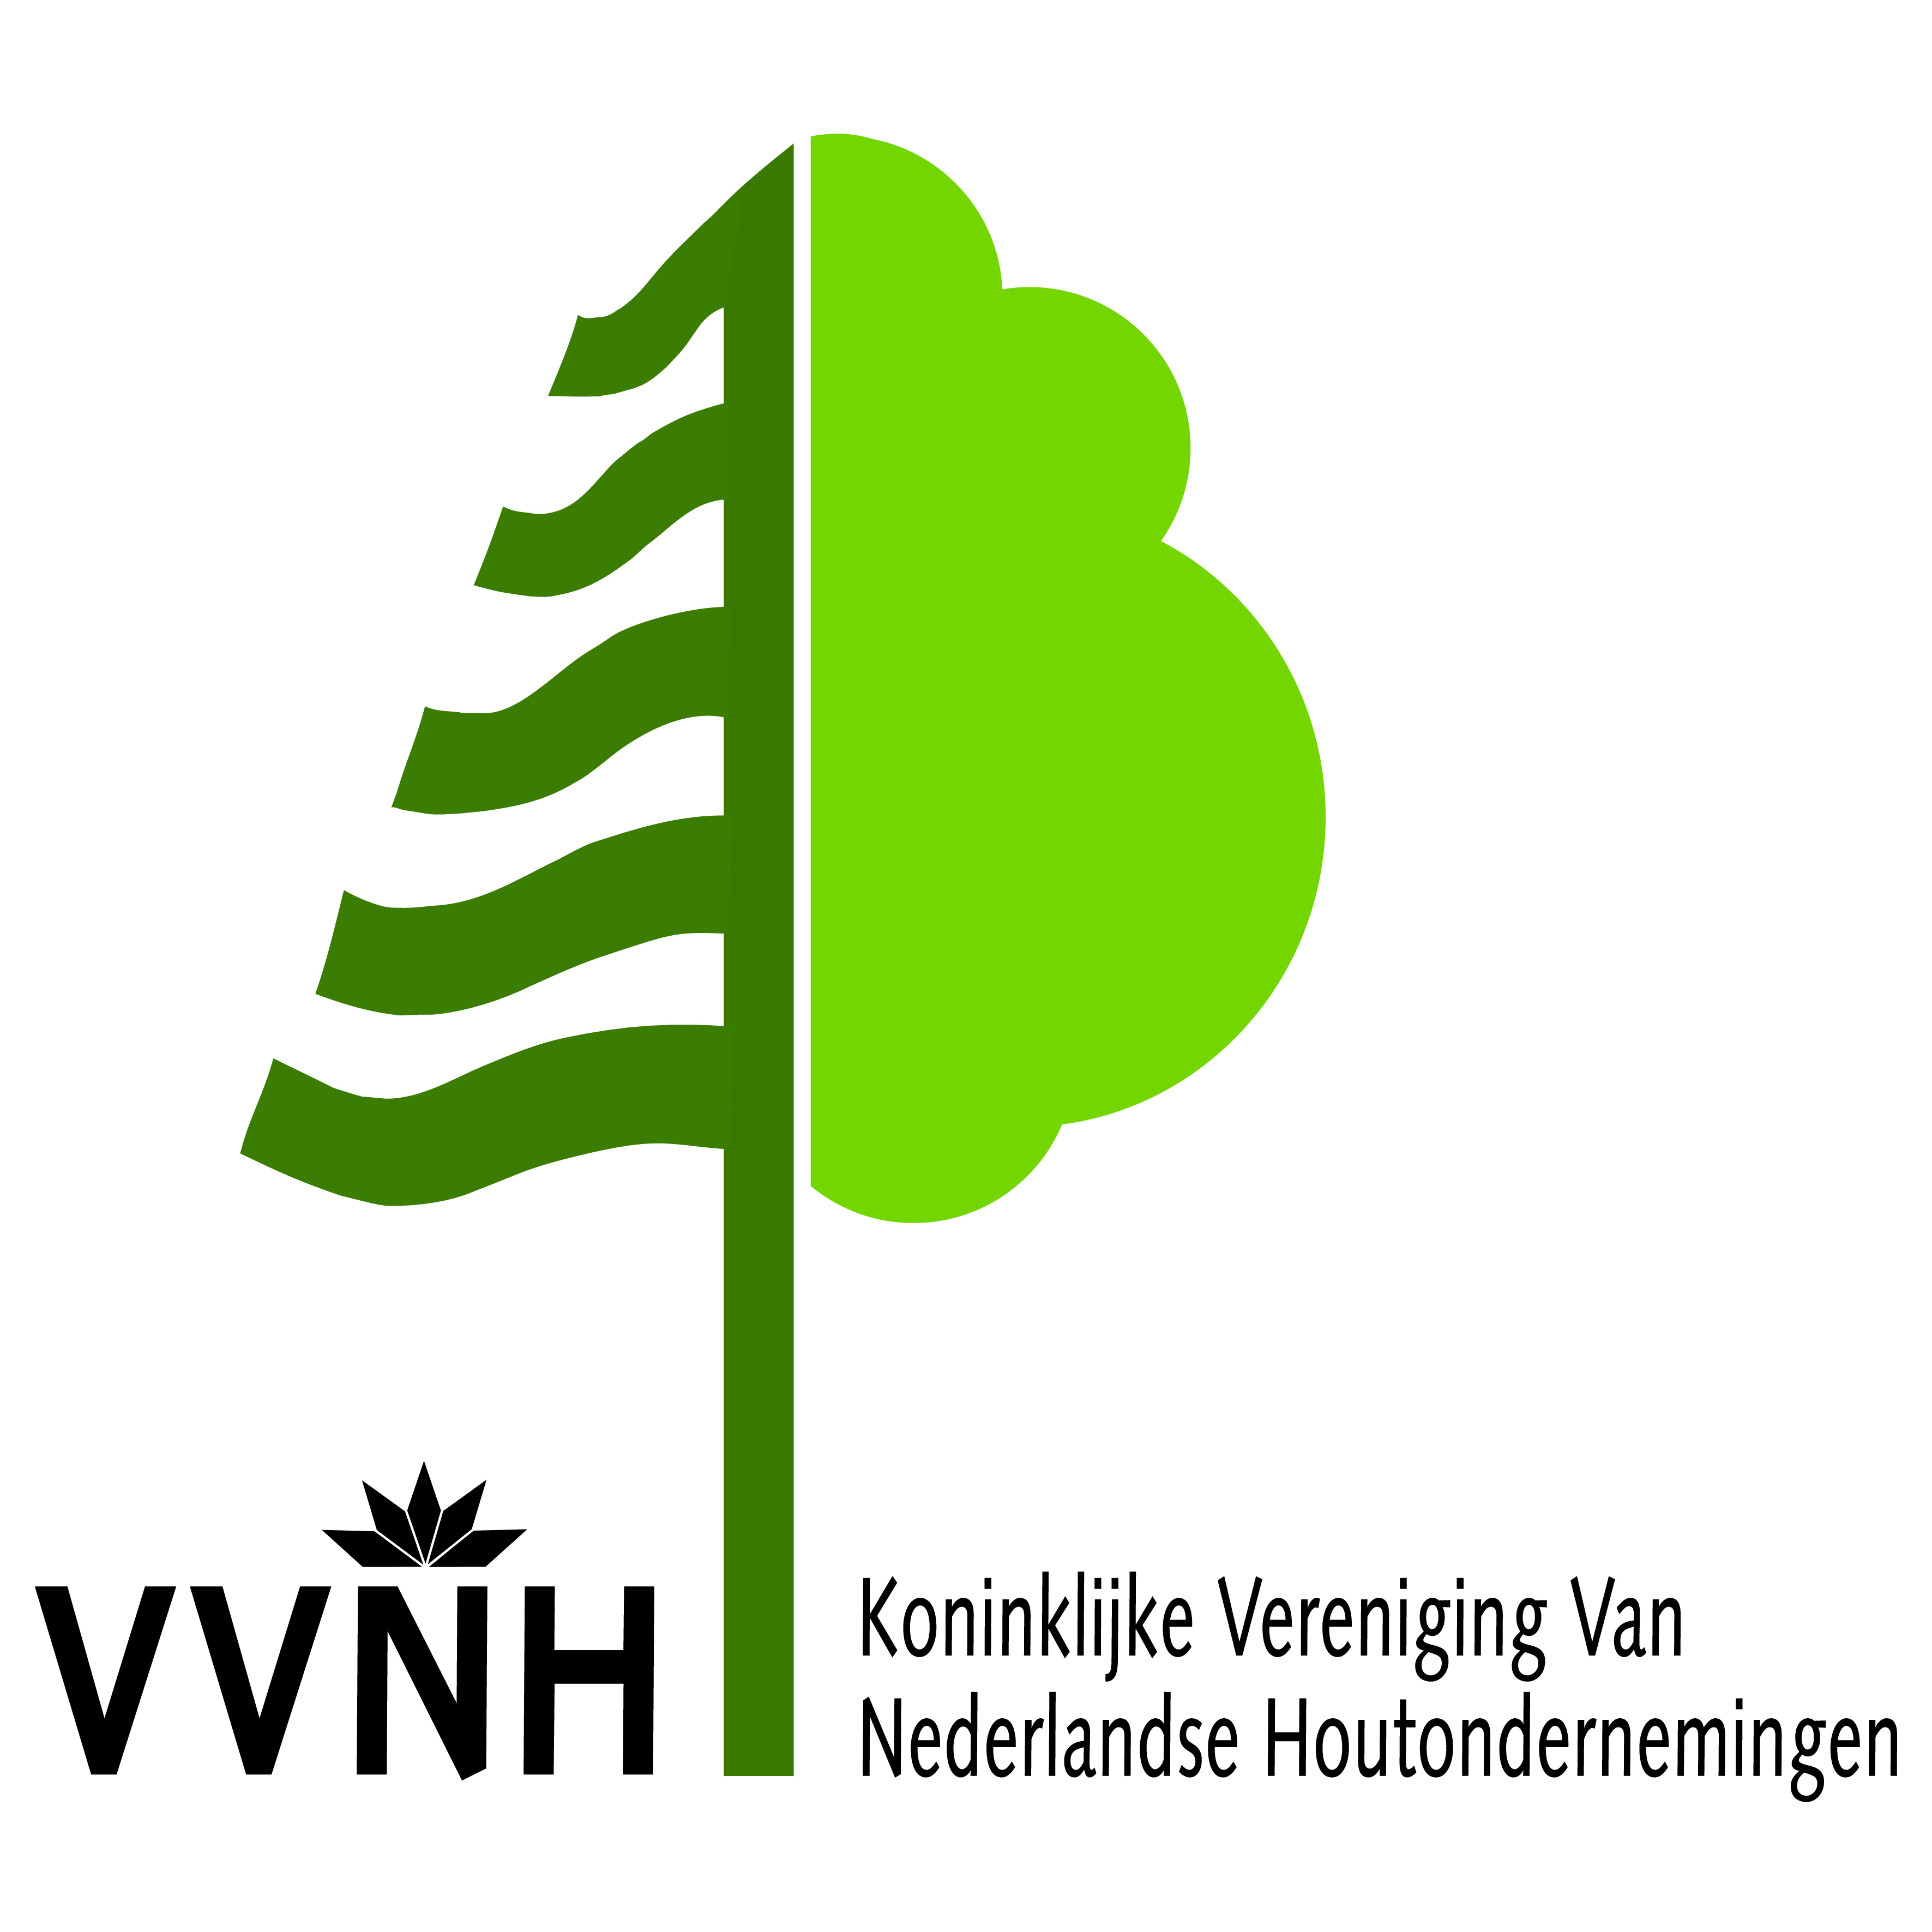 Koninklijke Vereniging van Nederlandse Houtondernemingen VVNH